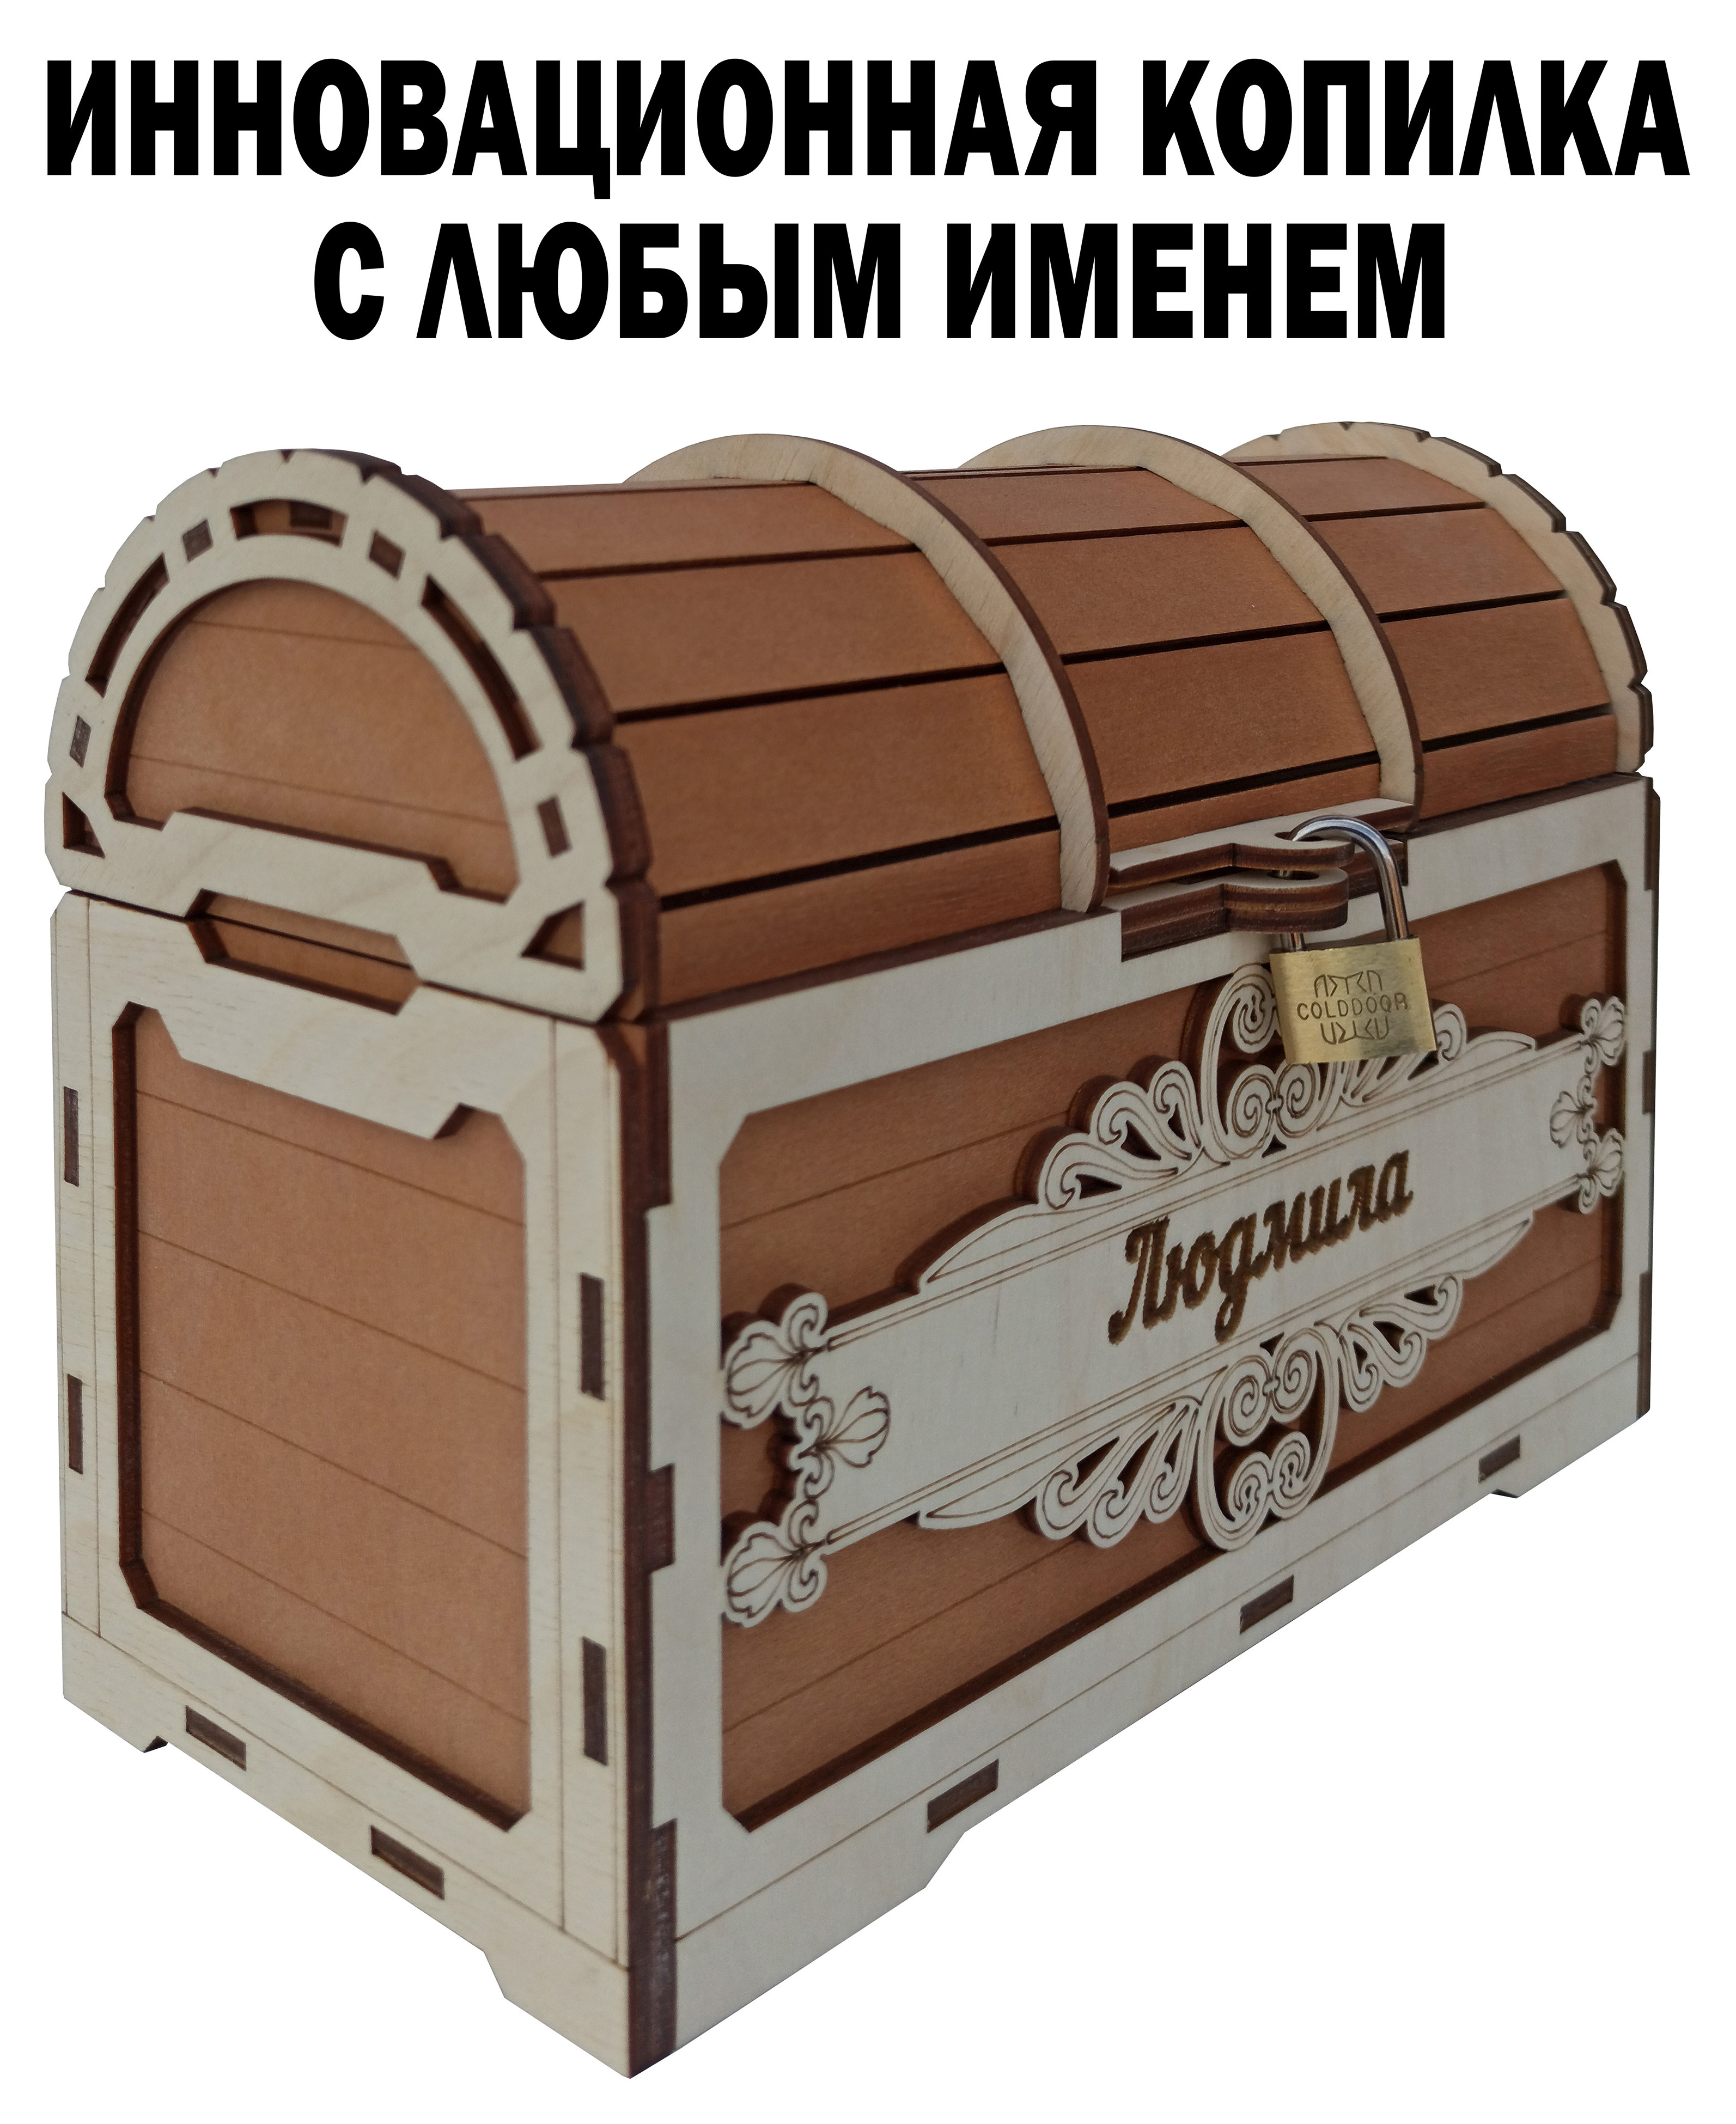 Подарки за 500 рублей и дешевле